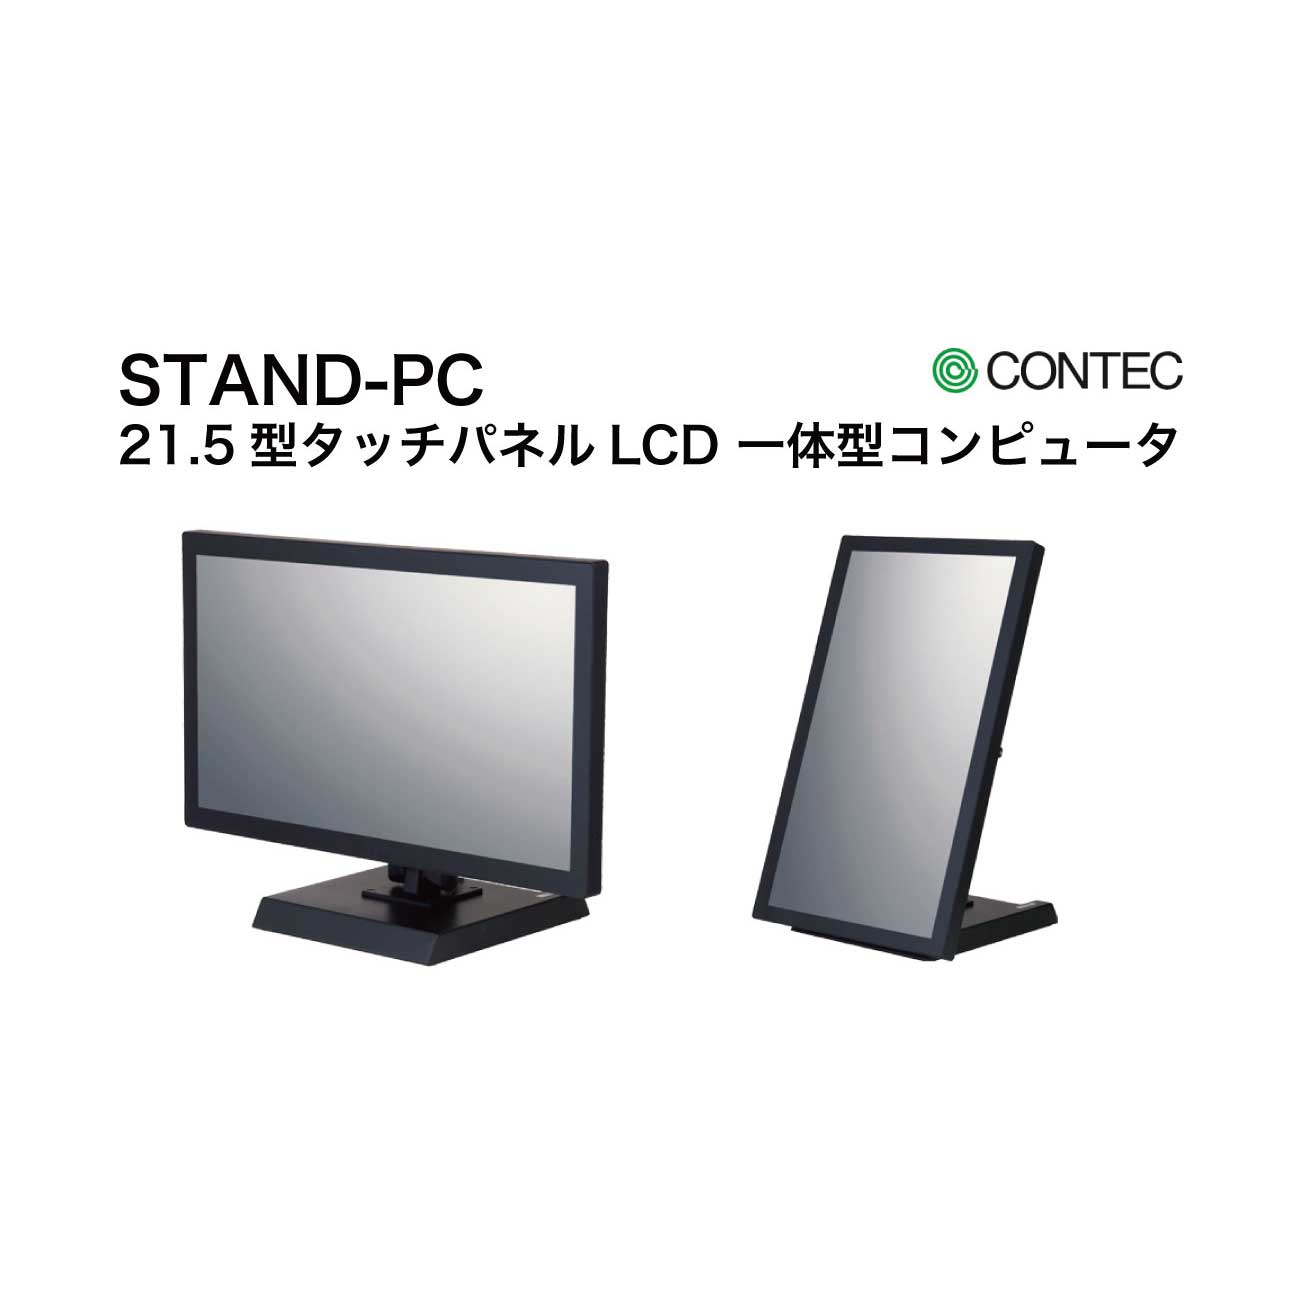 STAND-PC 100シリーズ